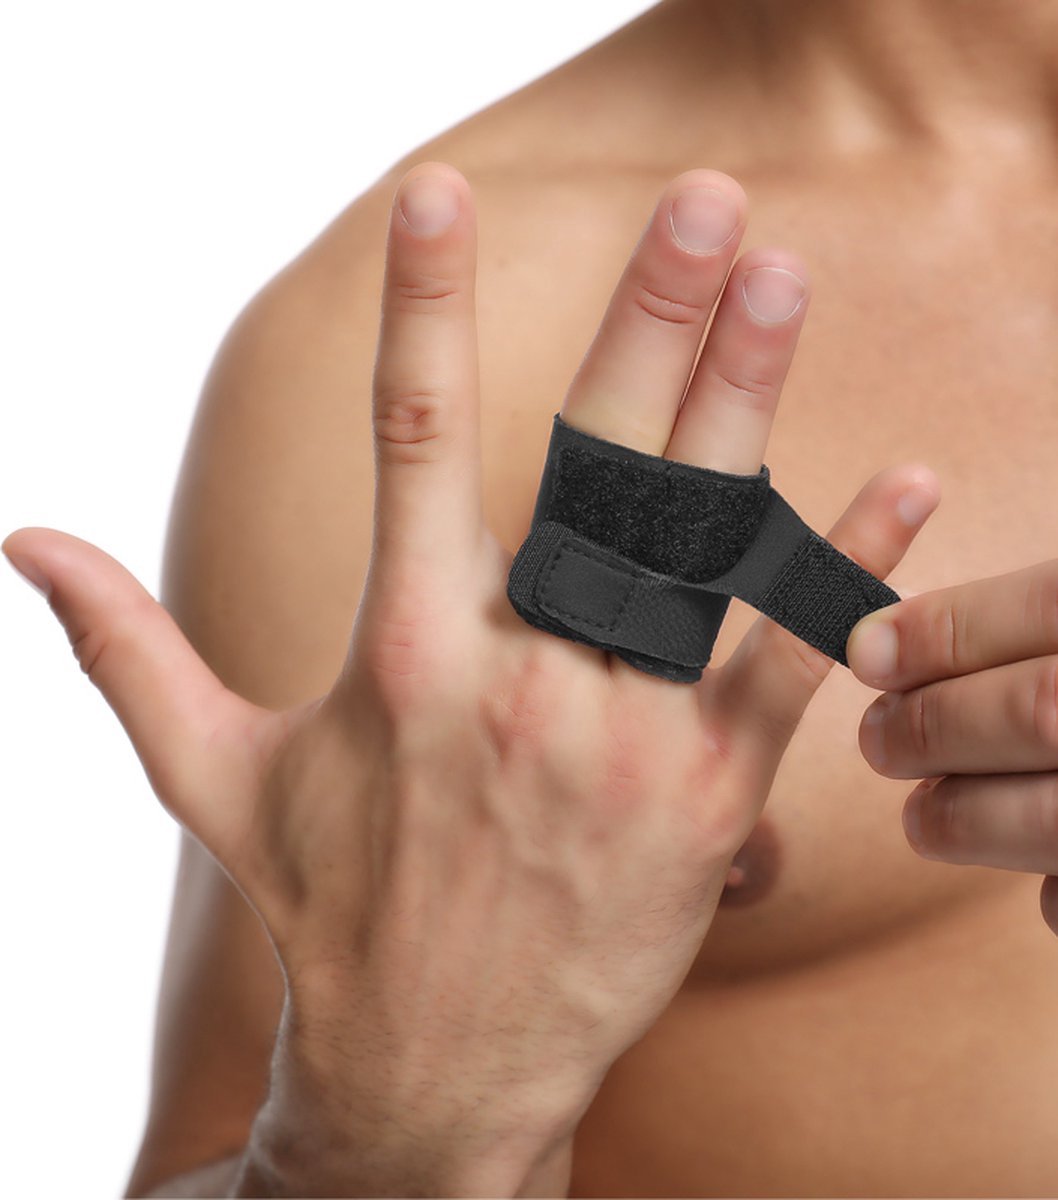 CHPN - Vingerbrace - Brace voor vinger - Brace - Handbrace - Vingerspalk - Pijnlijke vinger - Pijn aan vinger - Vinger verstevigen - Sportbrace